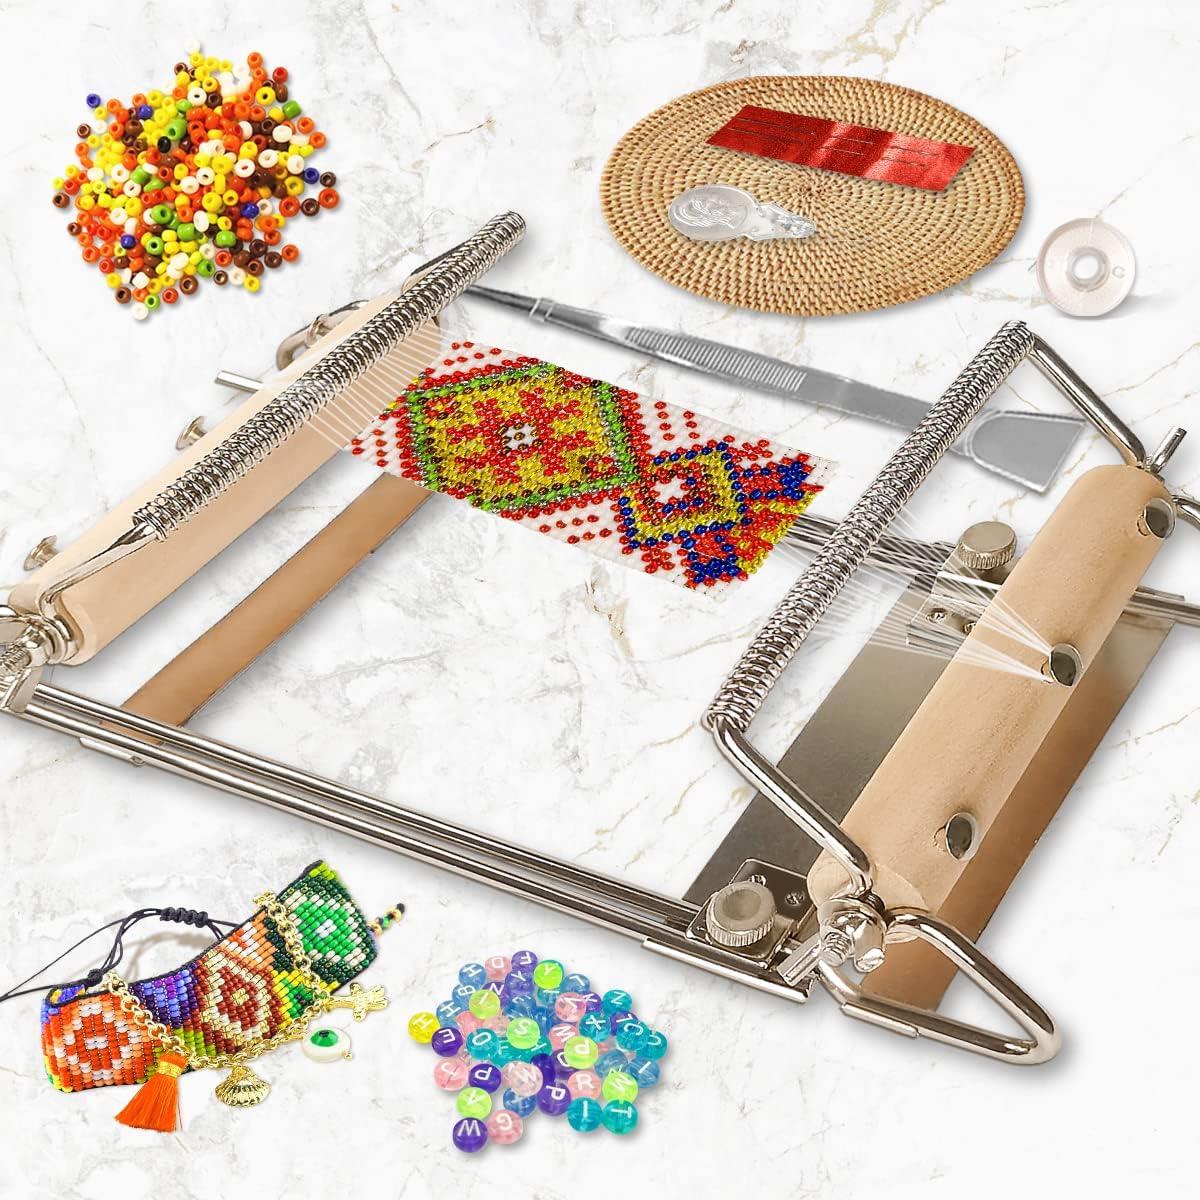 INDIVSHOW Adjustable Bead Loom,Seed Bead Loom Kit Includes Thread